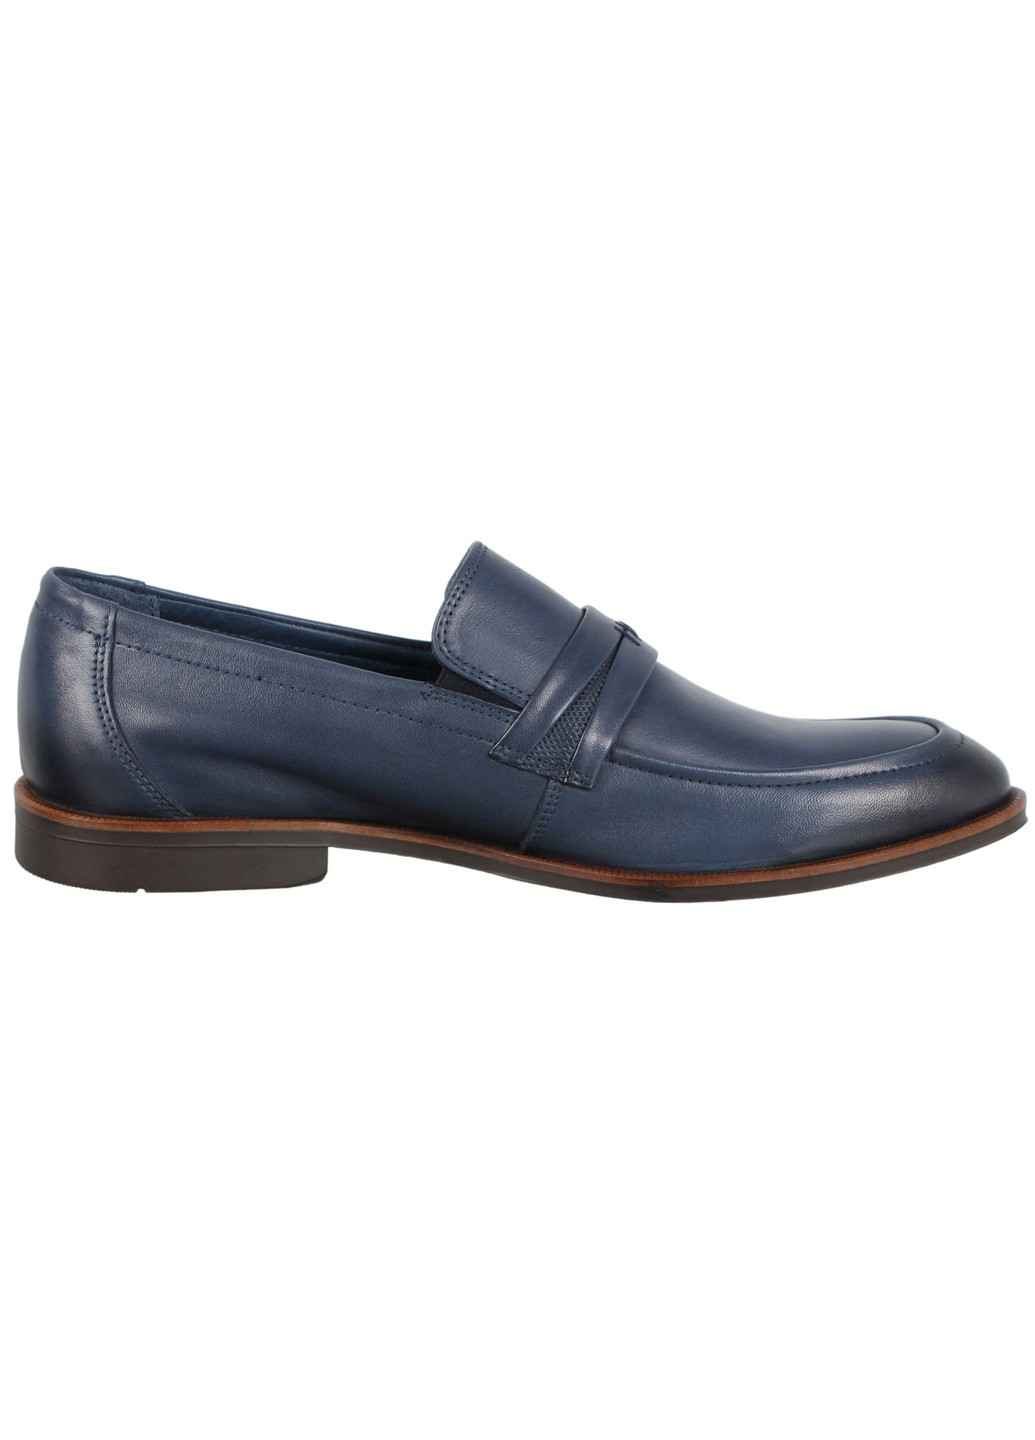 Синие мужские классические туфли 197309 Alvito без шнурков